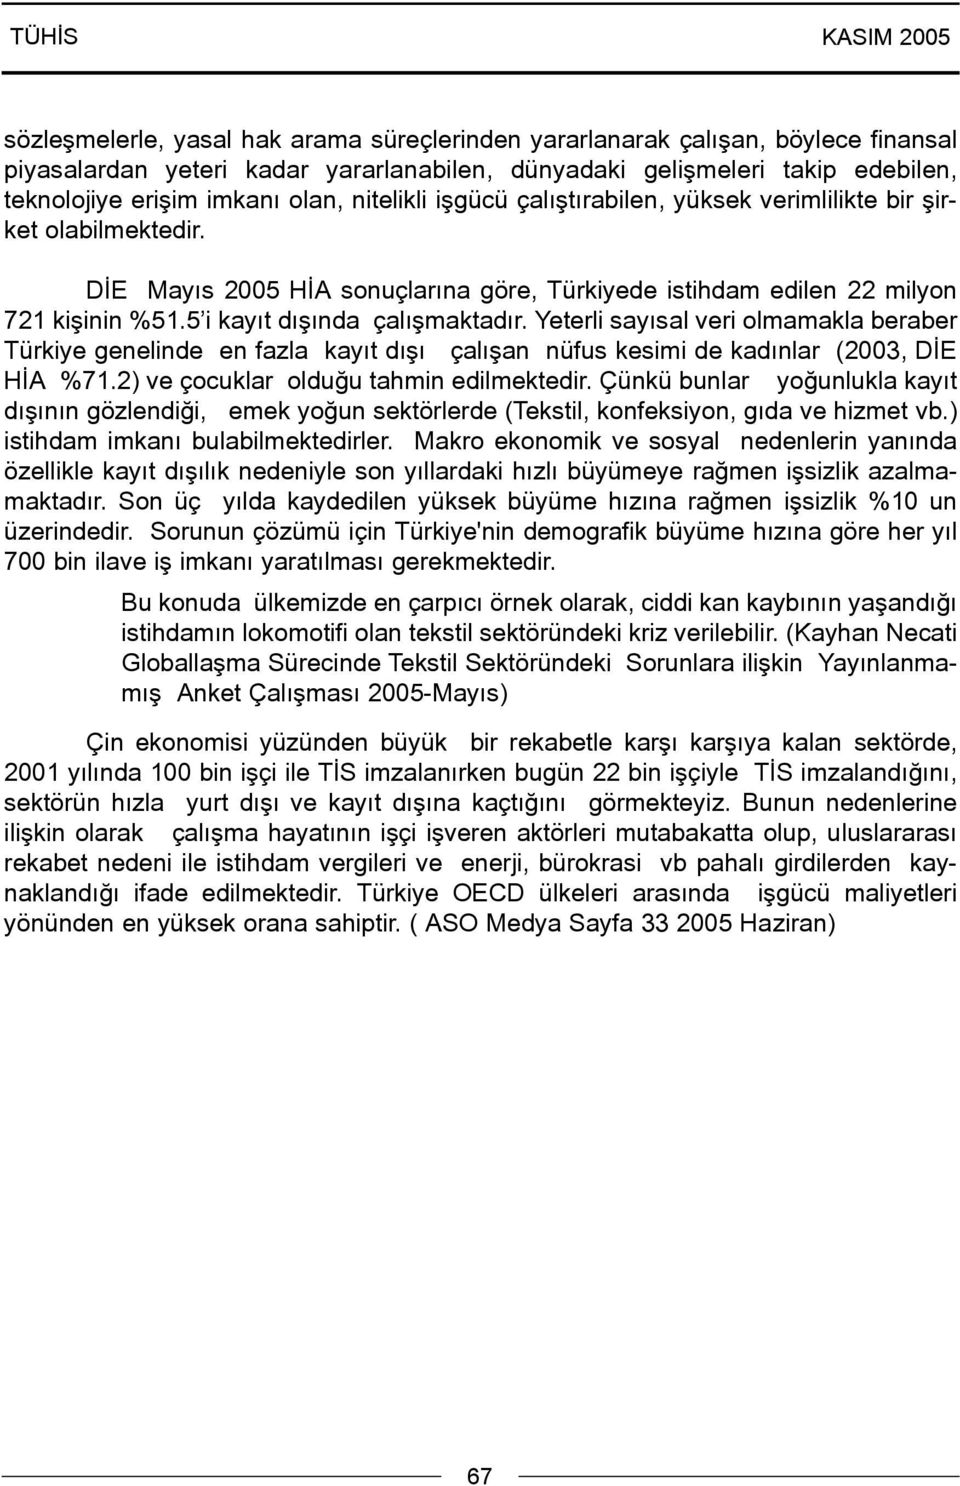 5 i kayýt dýþýnda çalýþmaktadýr. Yeterli sayýsal veri olmamakla beraber Türkiye genelinde en fazla kayýt dýþý çalýþan nüfus kesimi de kadýnlar (2003, DÝE HÝA %71.